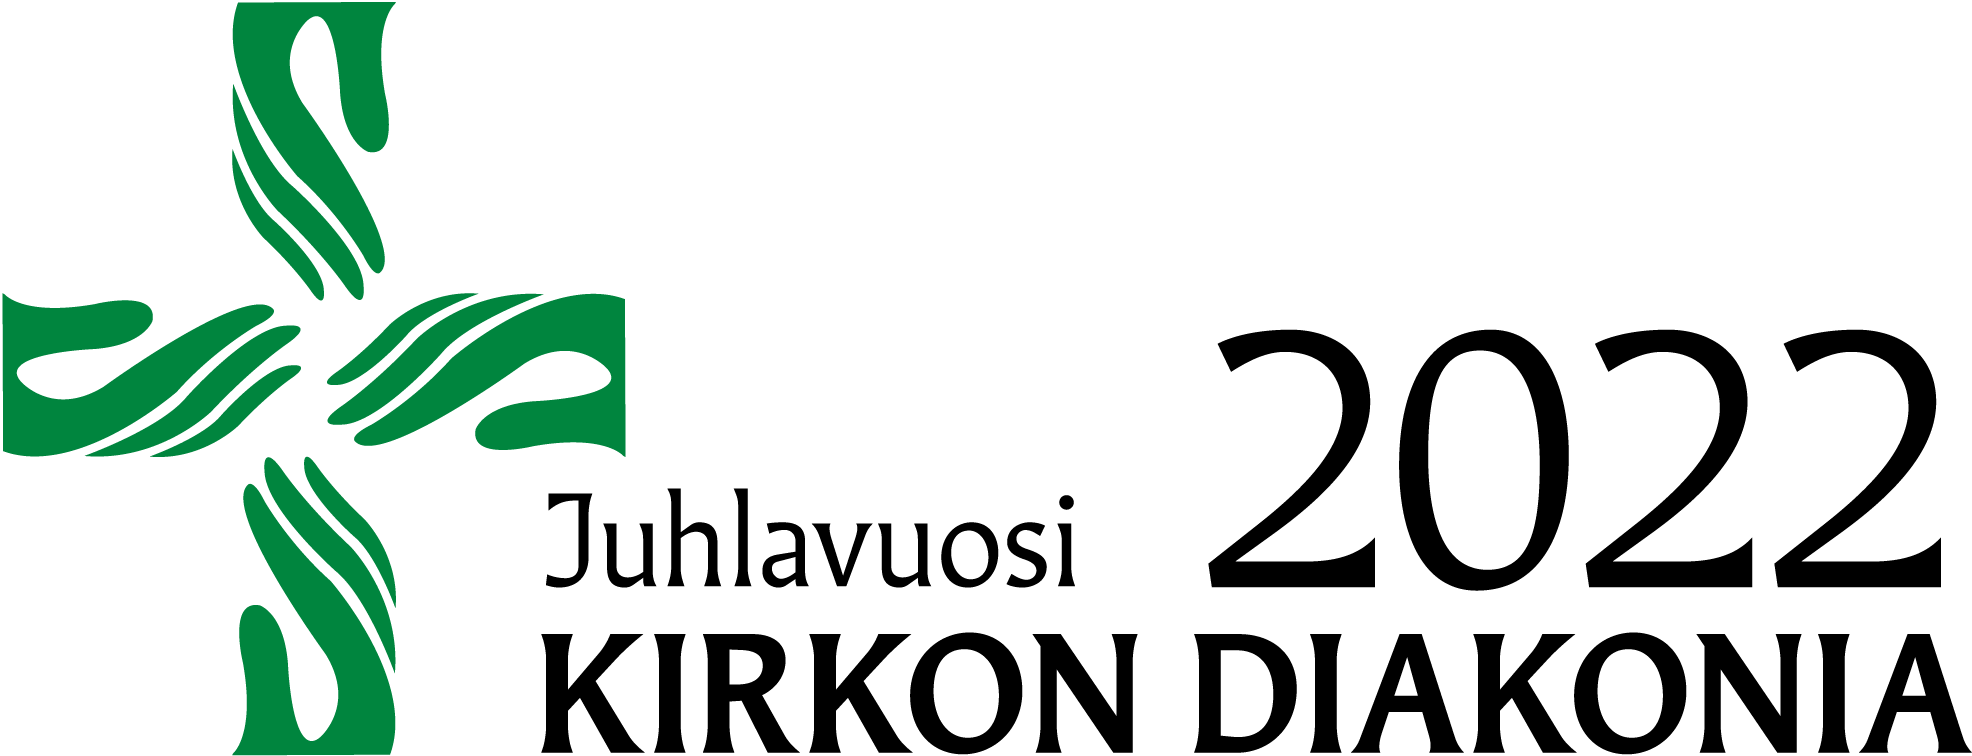 Diakonian juhlavuosi 2022 vihreät kädet logo